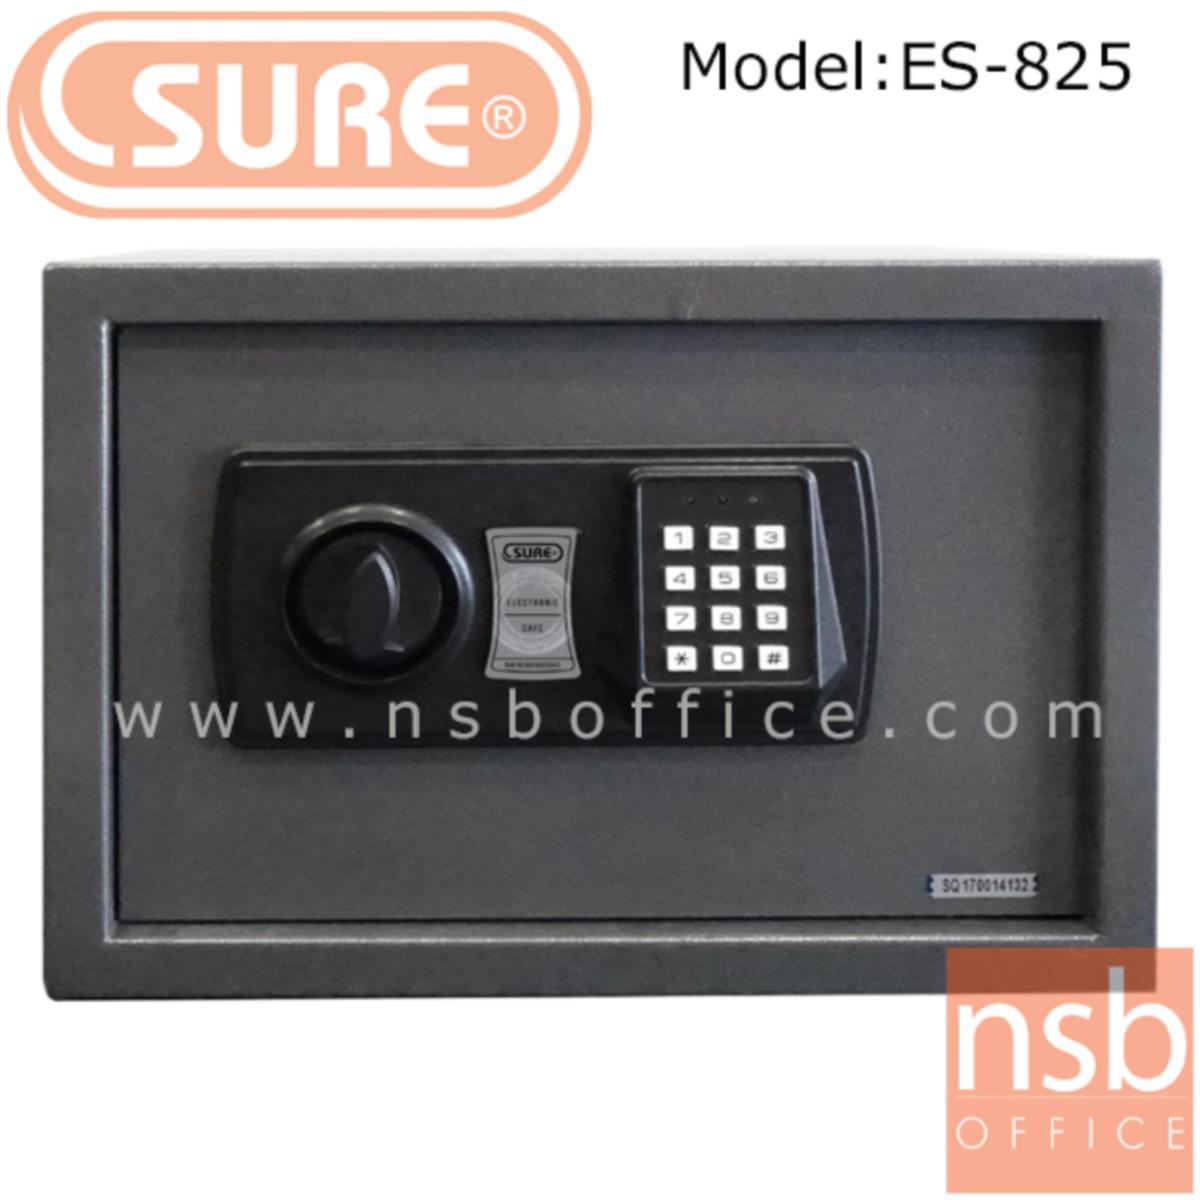 ตู้เซฟดิจตอล SR-ES825 น้ำหนัก 5.5 กก. (1 รหัสกด / ปุ่มหมุนบิด)   